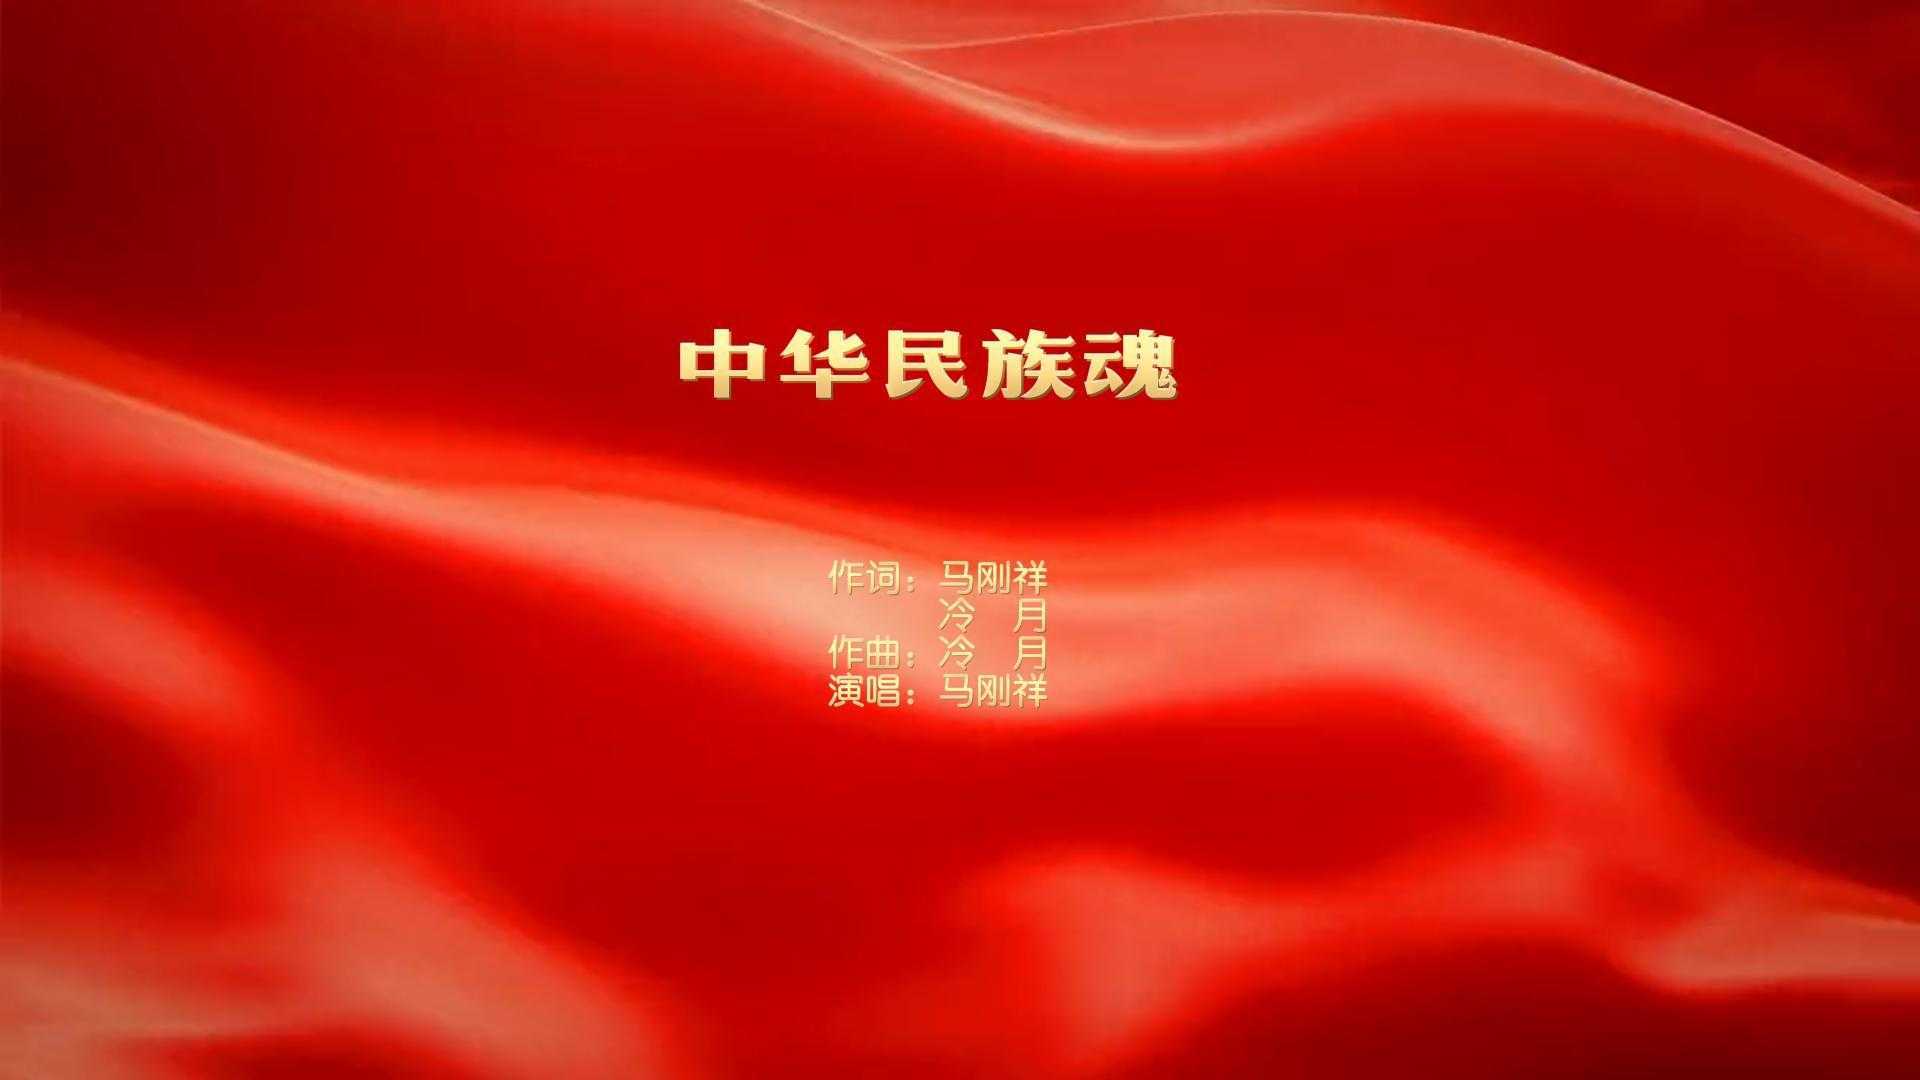 原创歌曲《中华民族魂》MV样片 ，马刚祥演唱